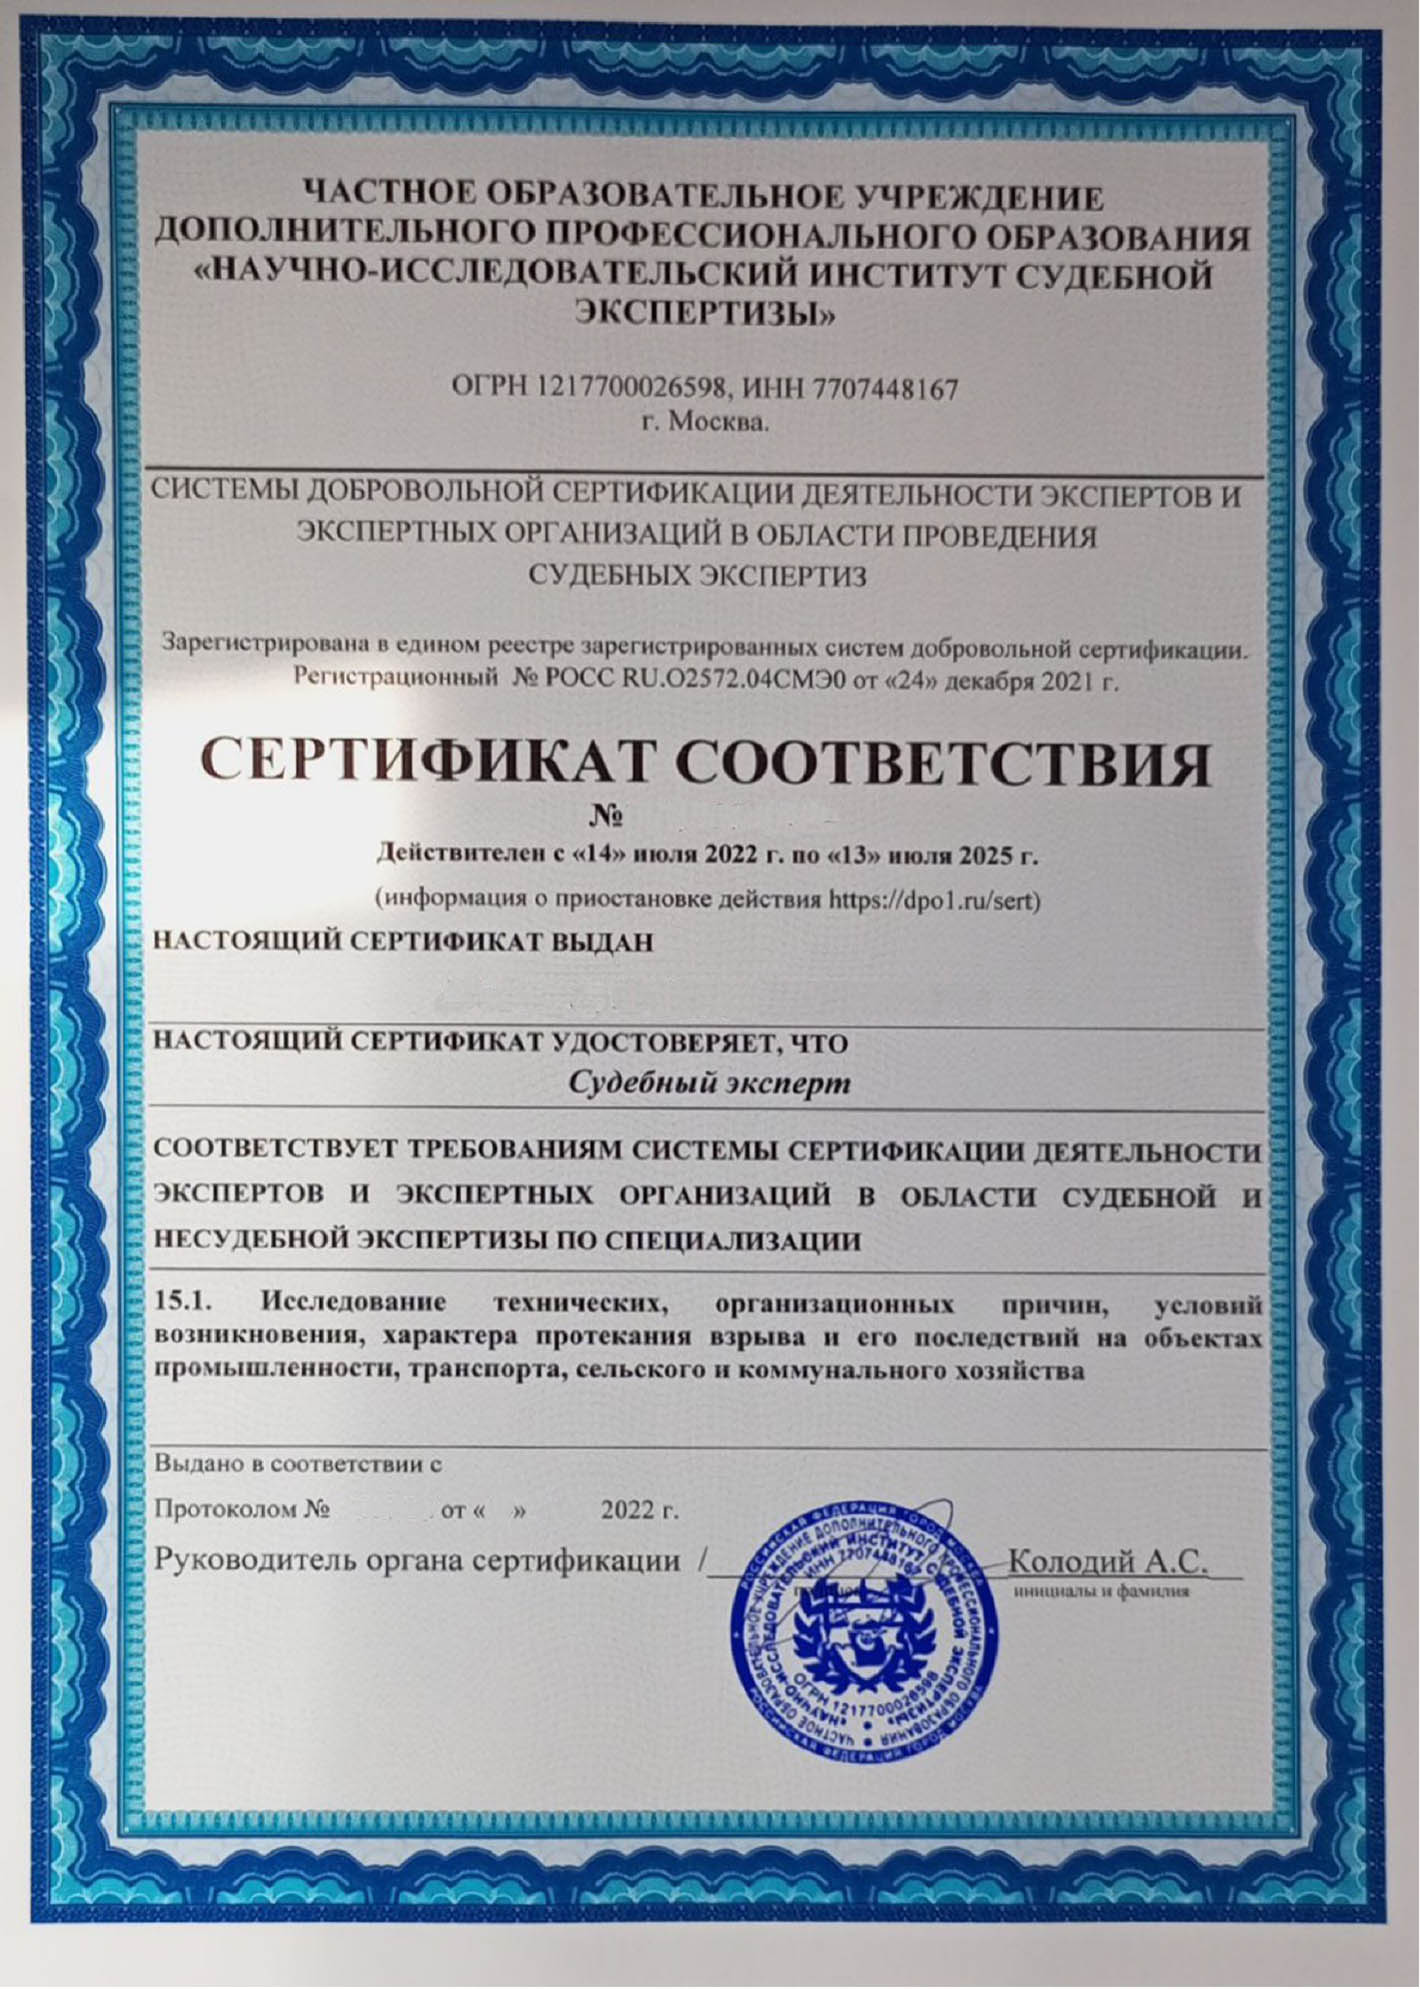 Сертификат-соответствия-Судебного-эксперта